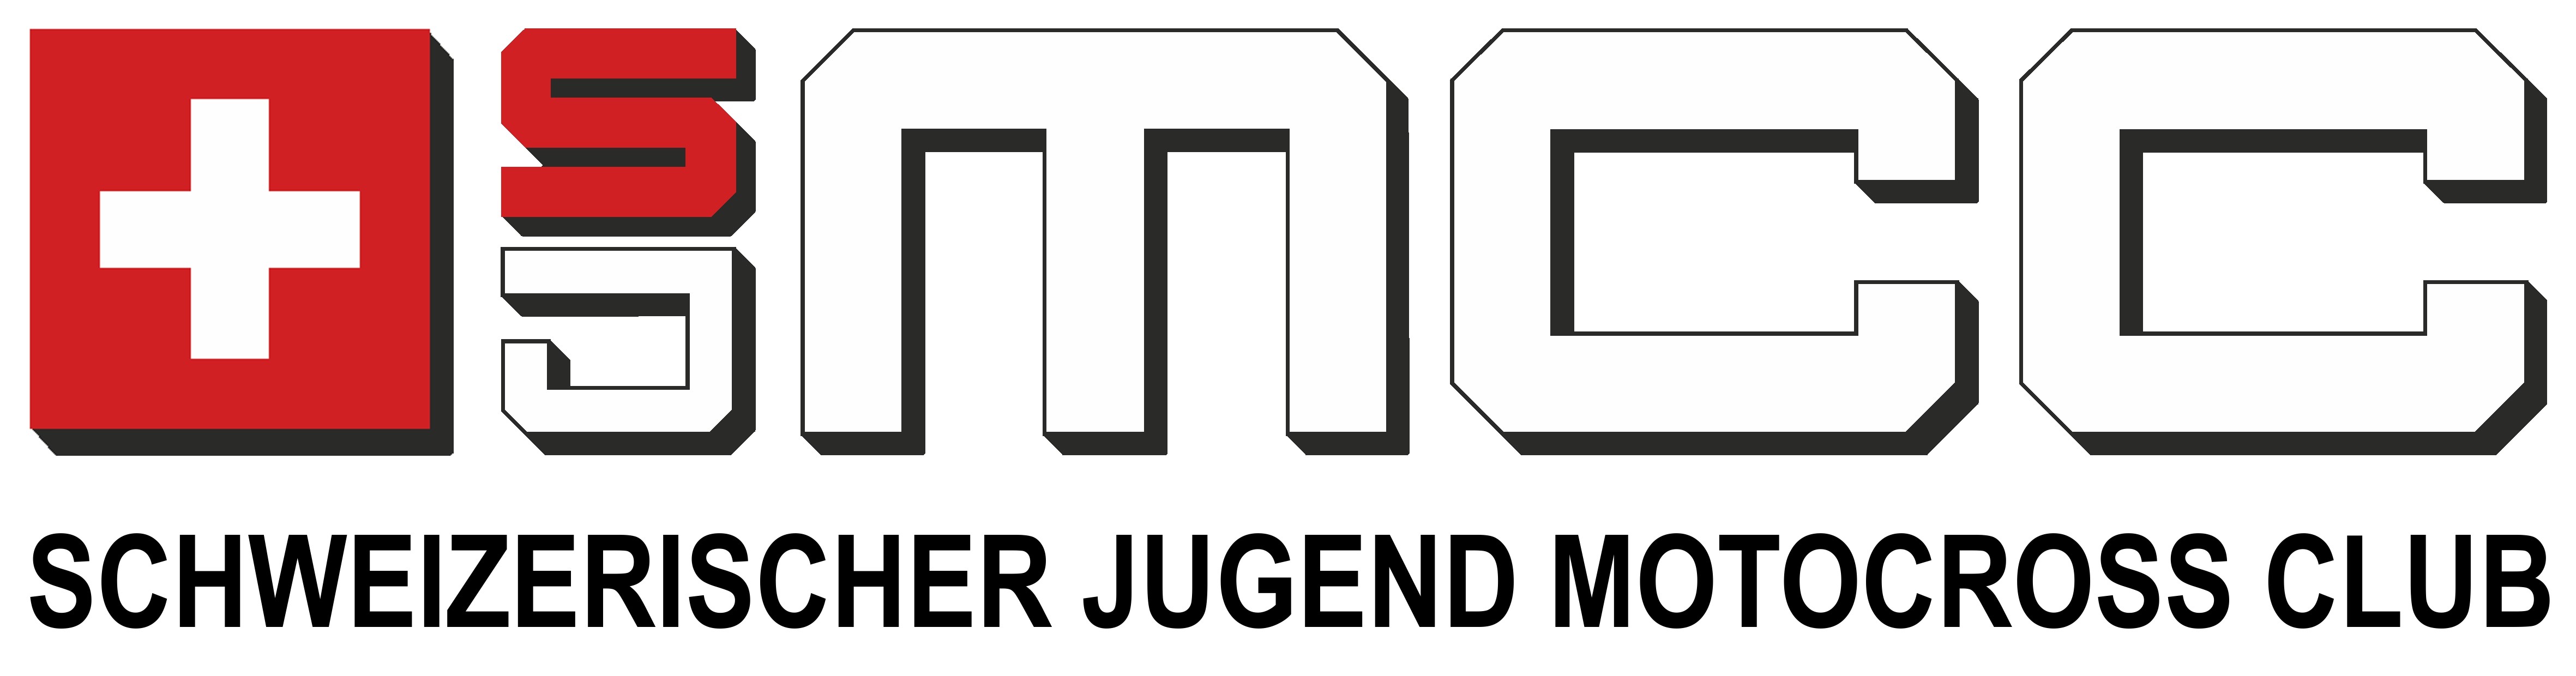 SJMCC - Schweizer Jugend Motocross Club